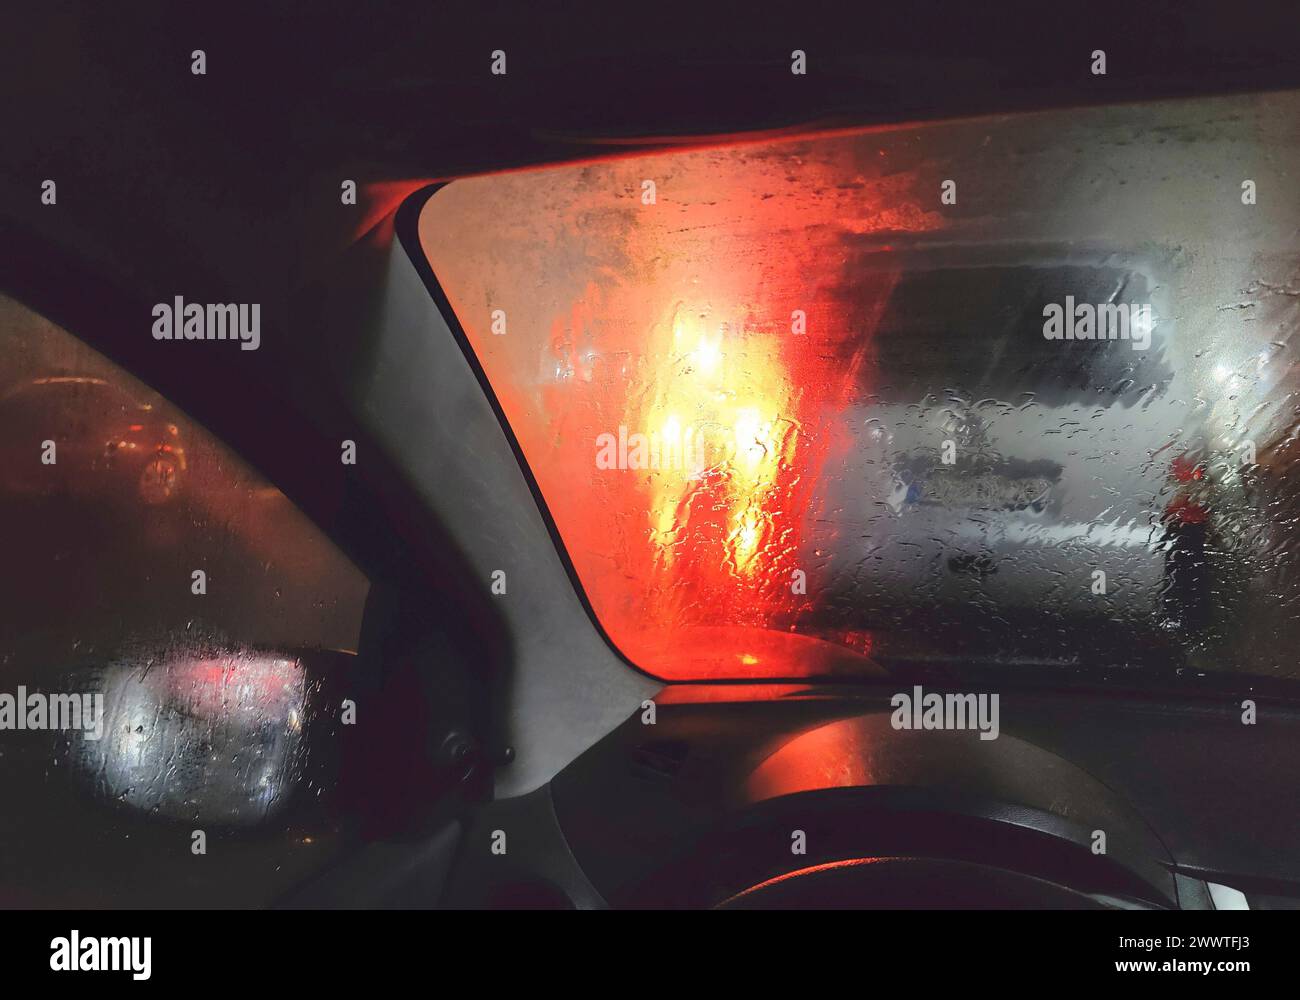 Vue de la voiture dans une visibilité dangereusement mauvaise la nuit avec pluie et rétroéclairage aveuglant, Allemagne Banque D'Images